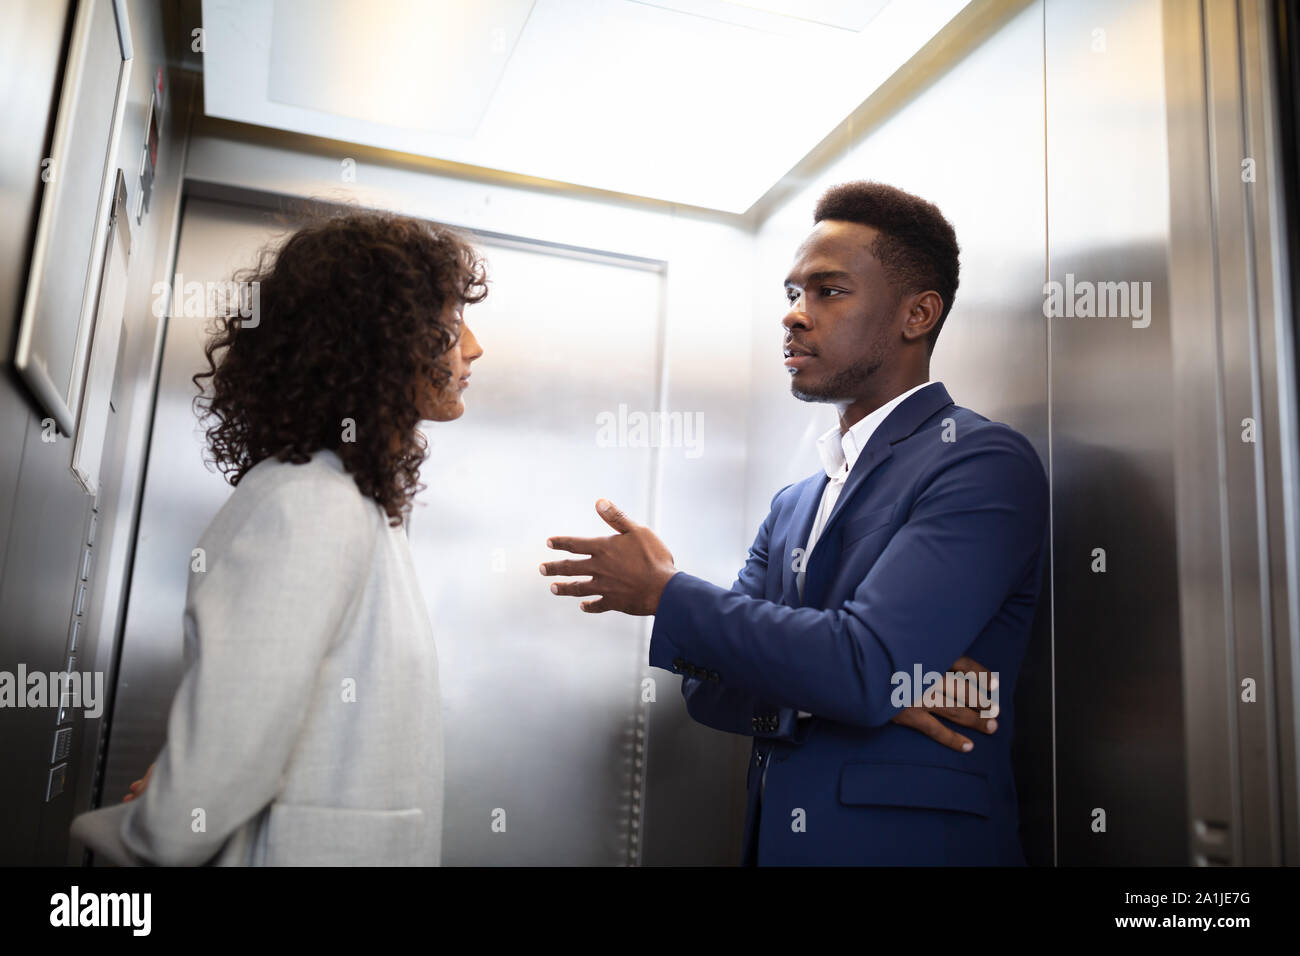 Les jeunes entrepreneurs africains ayant Conversation dans l'Ascenseur Banque D'Images